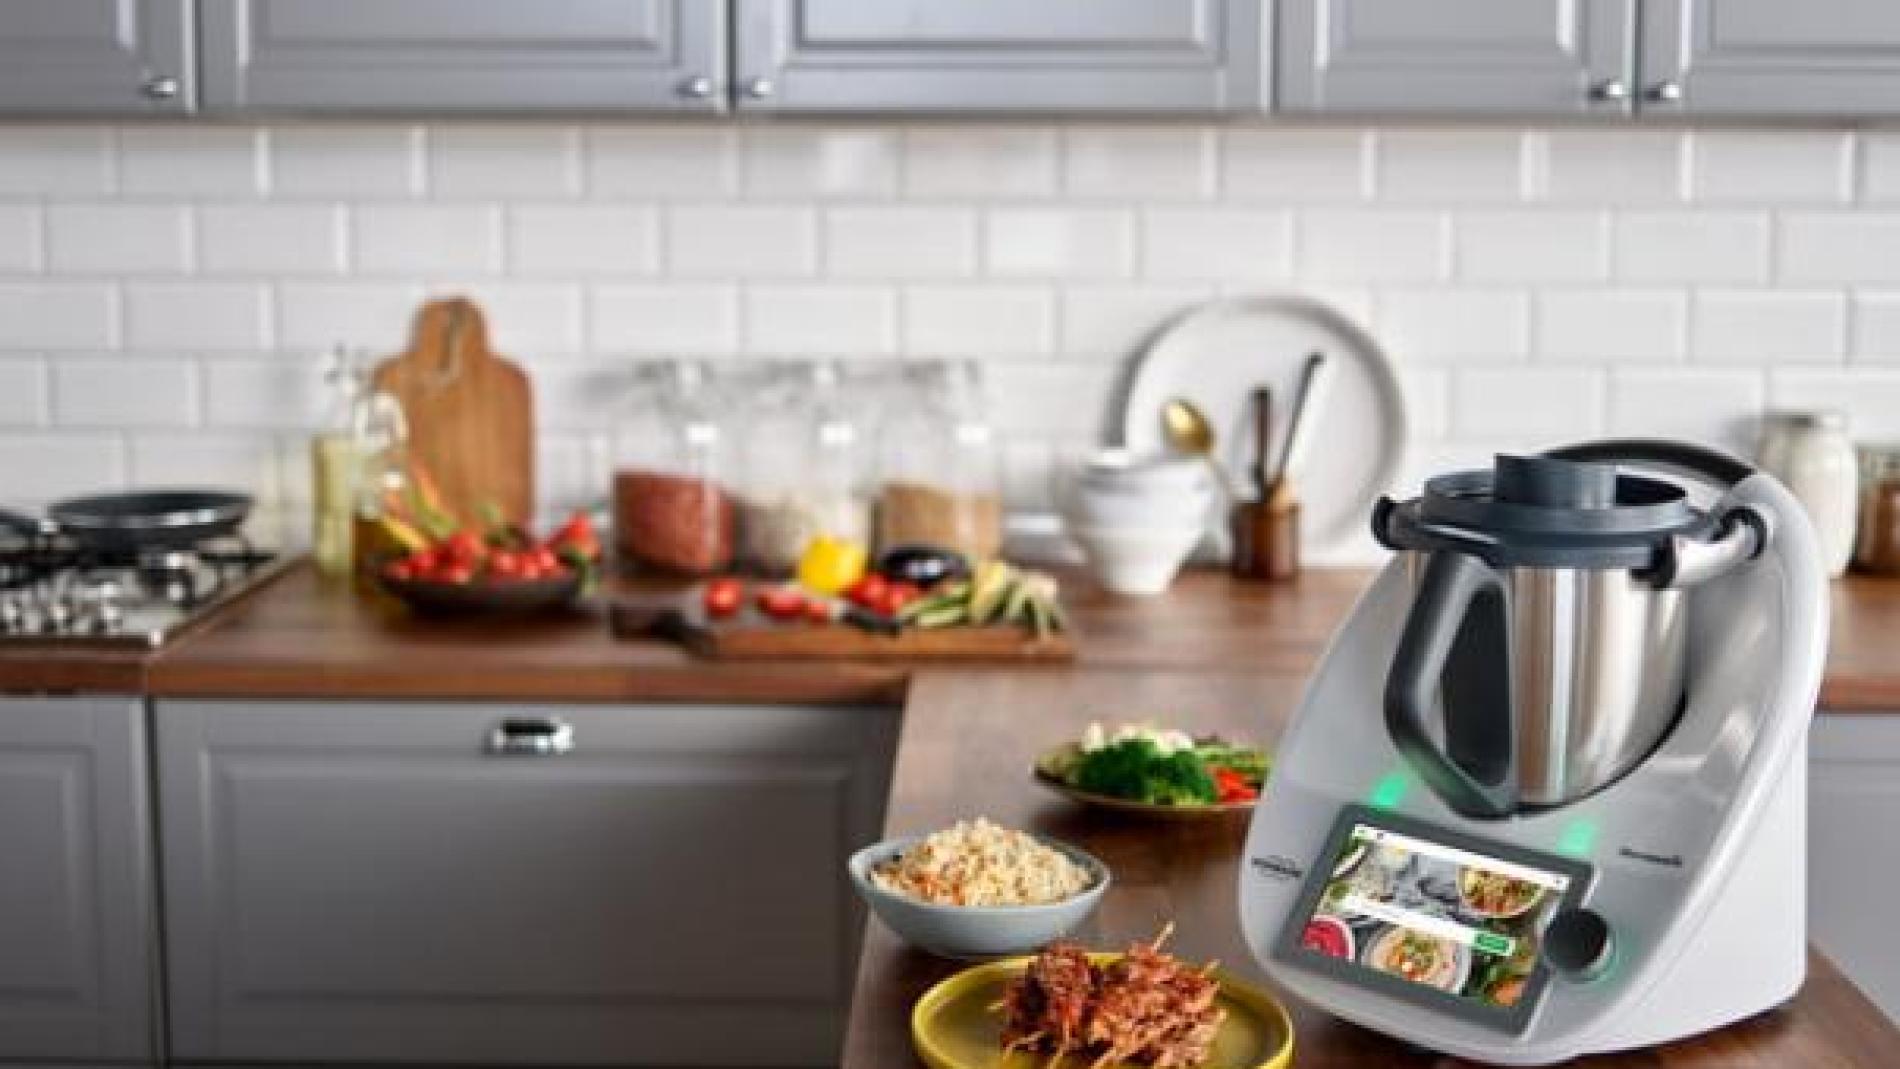 Los 10 mejores robots de cocina: hay diferencias de hasta 1.000 euros